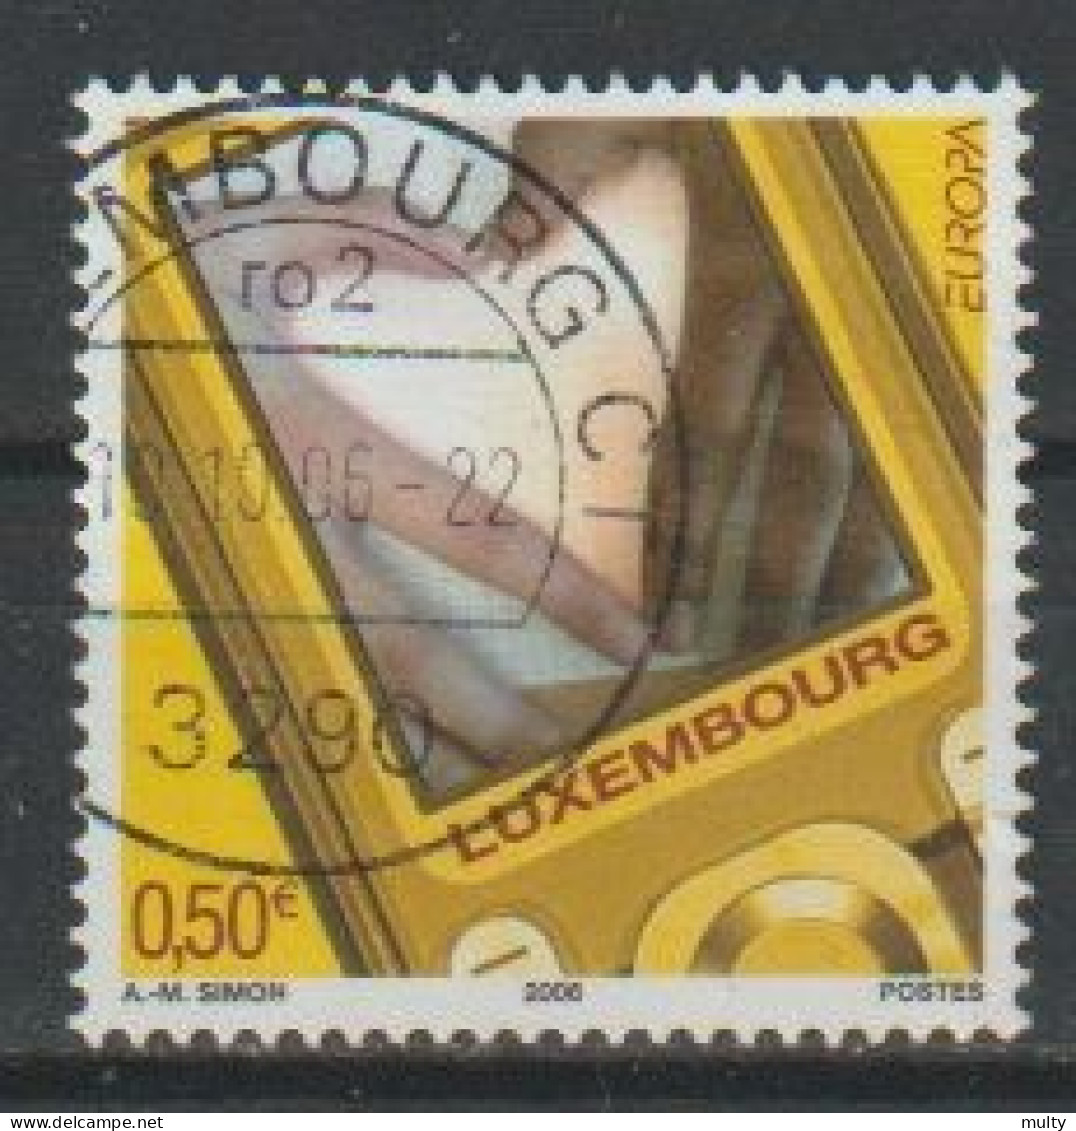 Luxemburg Y/T 1659 (0) - Usati